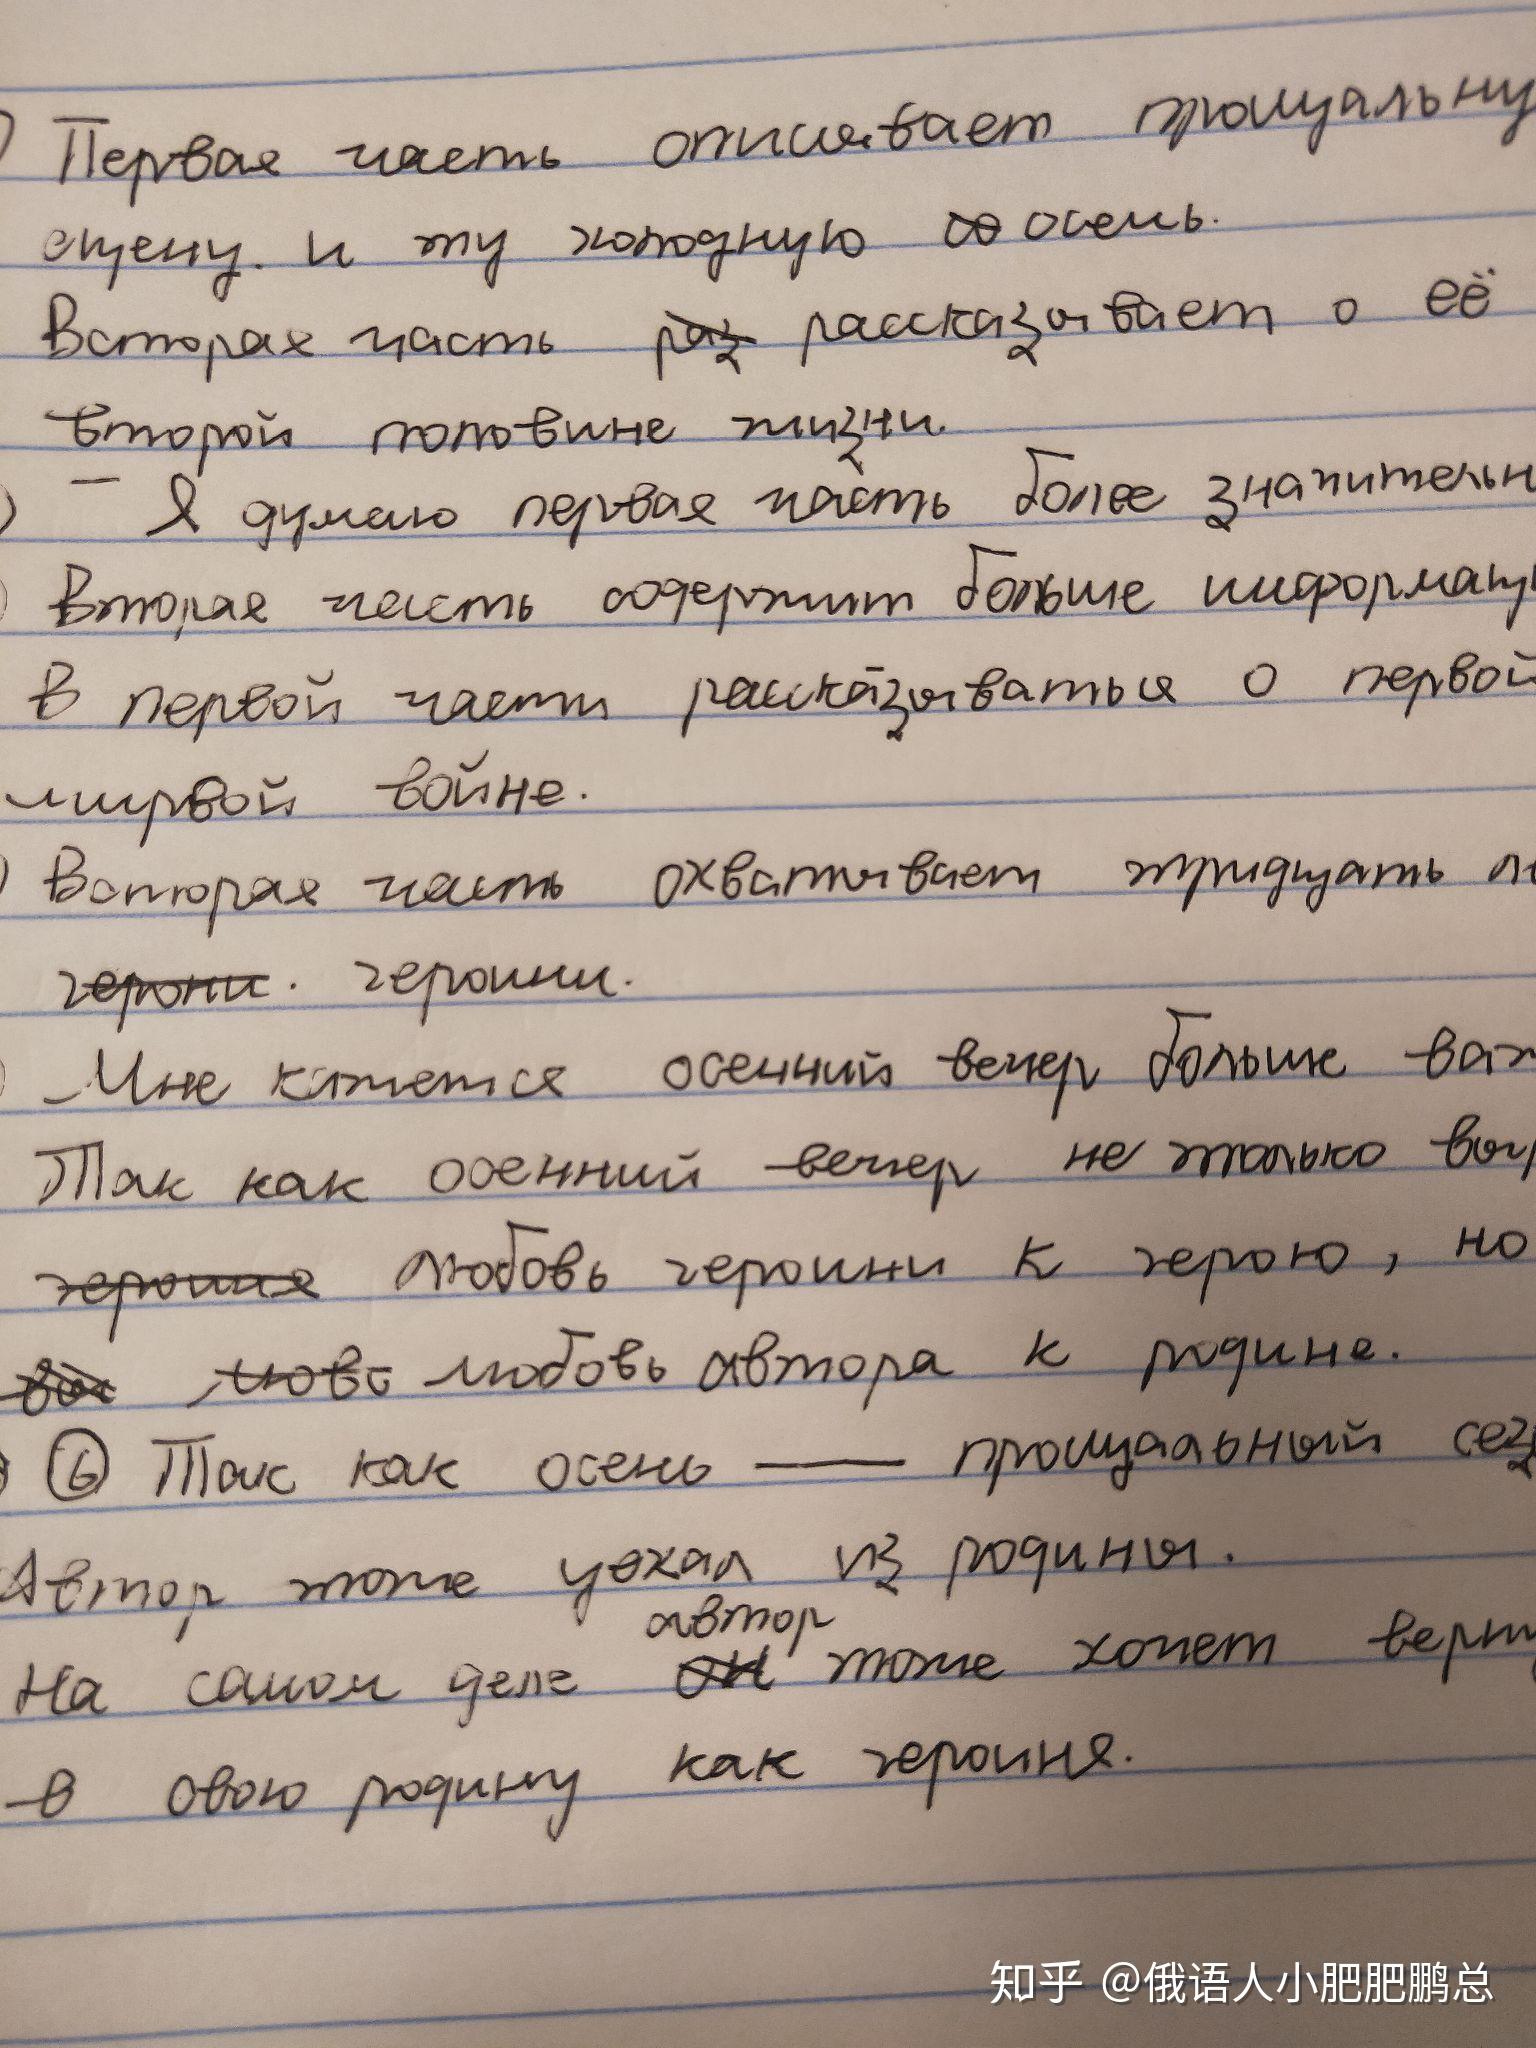 俄罗斯人的手写体,你看得懂吗?